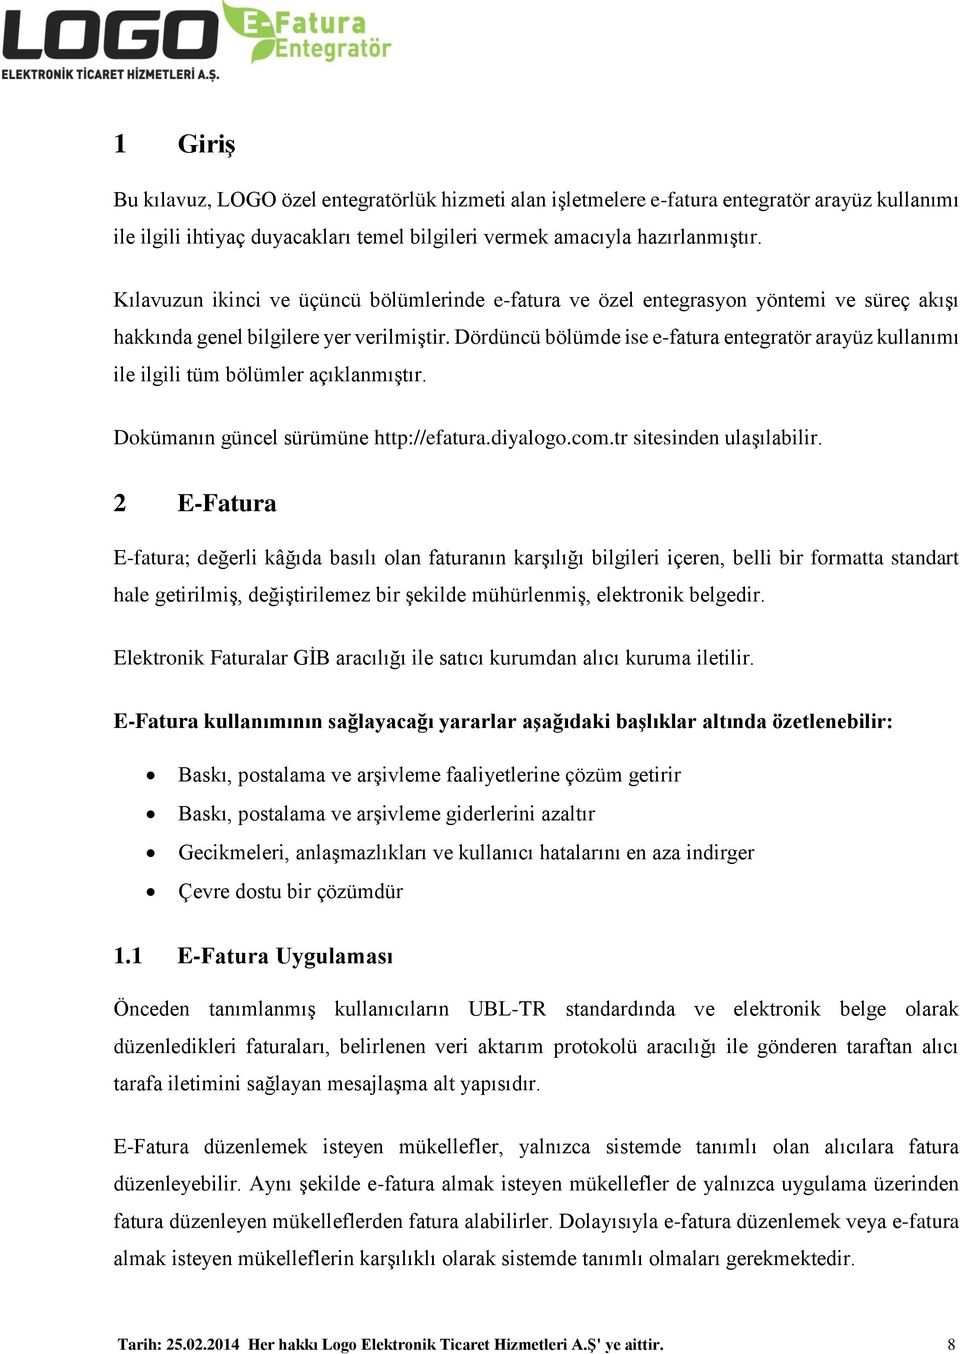 Dördüncü bölümde ise e-fatura entegratör arayüz kullanımı ile ilgili tüm bölümler açıklanmıştır. Dokümanın güncel sürümüne http://efatura.diyalogo.com.tr sitesinden ulaşılabilir.